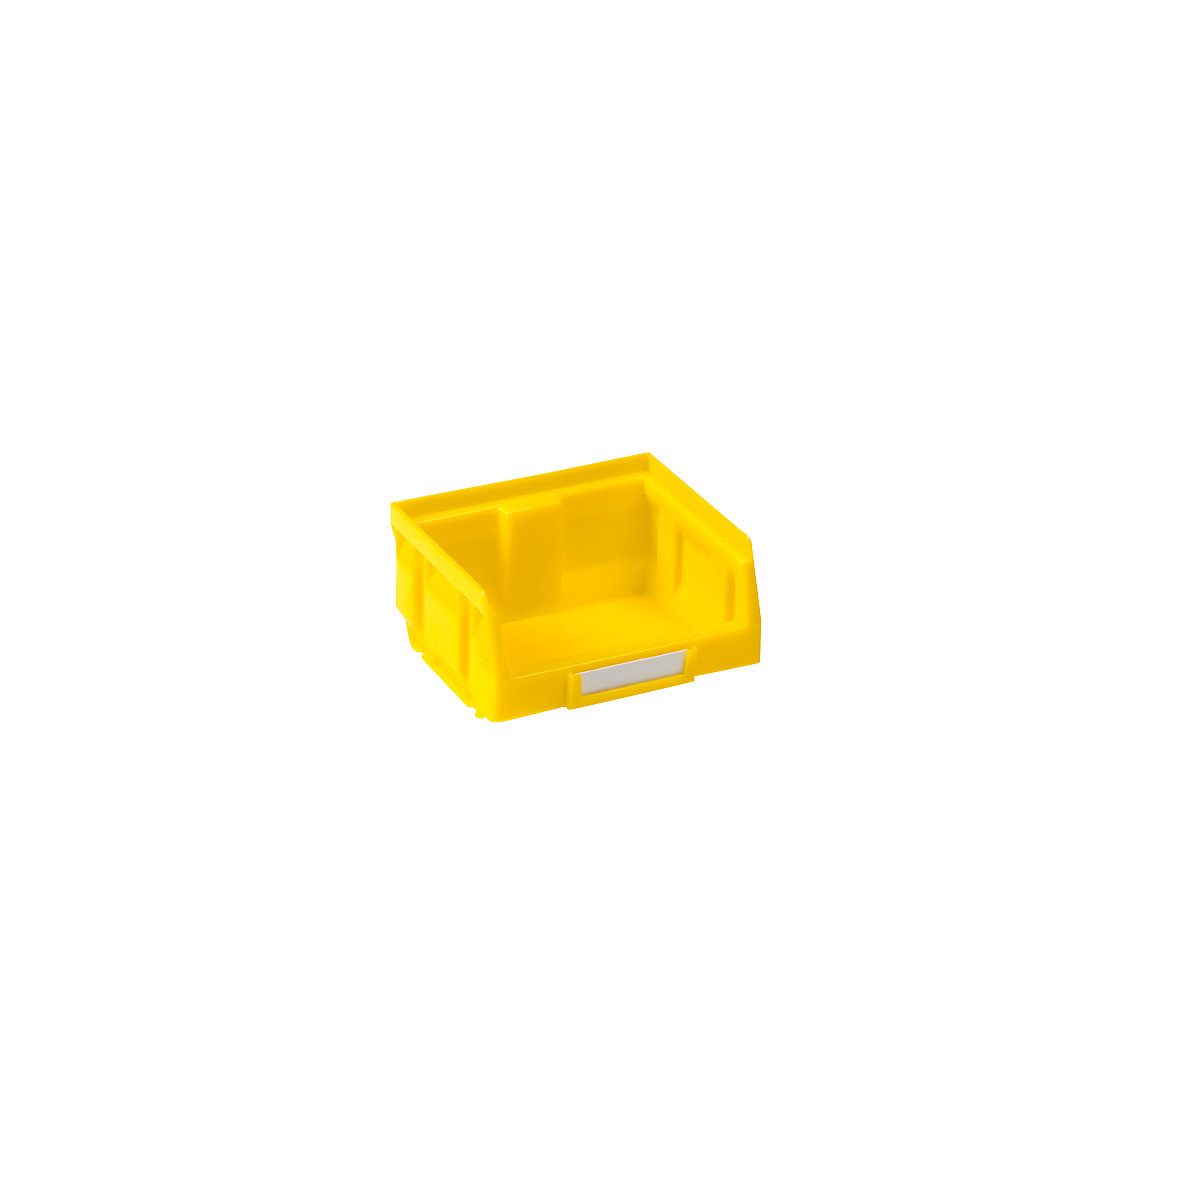 Přepravka s viditelným obsahem z polyetylénu, d x š x v 88 x 105 x 54 mm, žlutá, bal.j. 50 ks-7